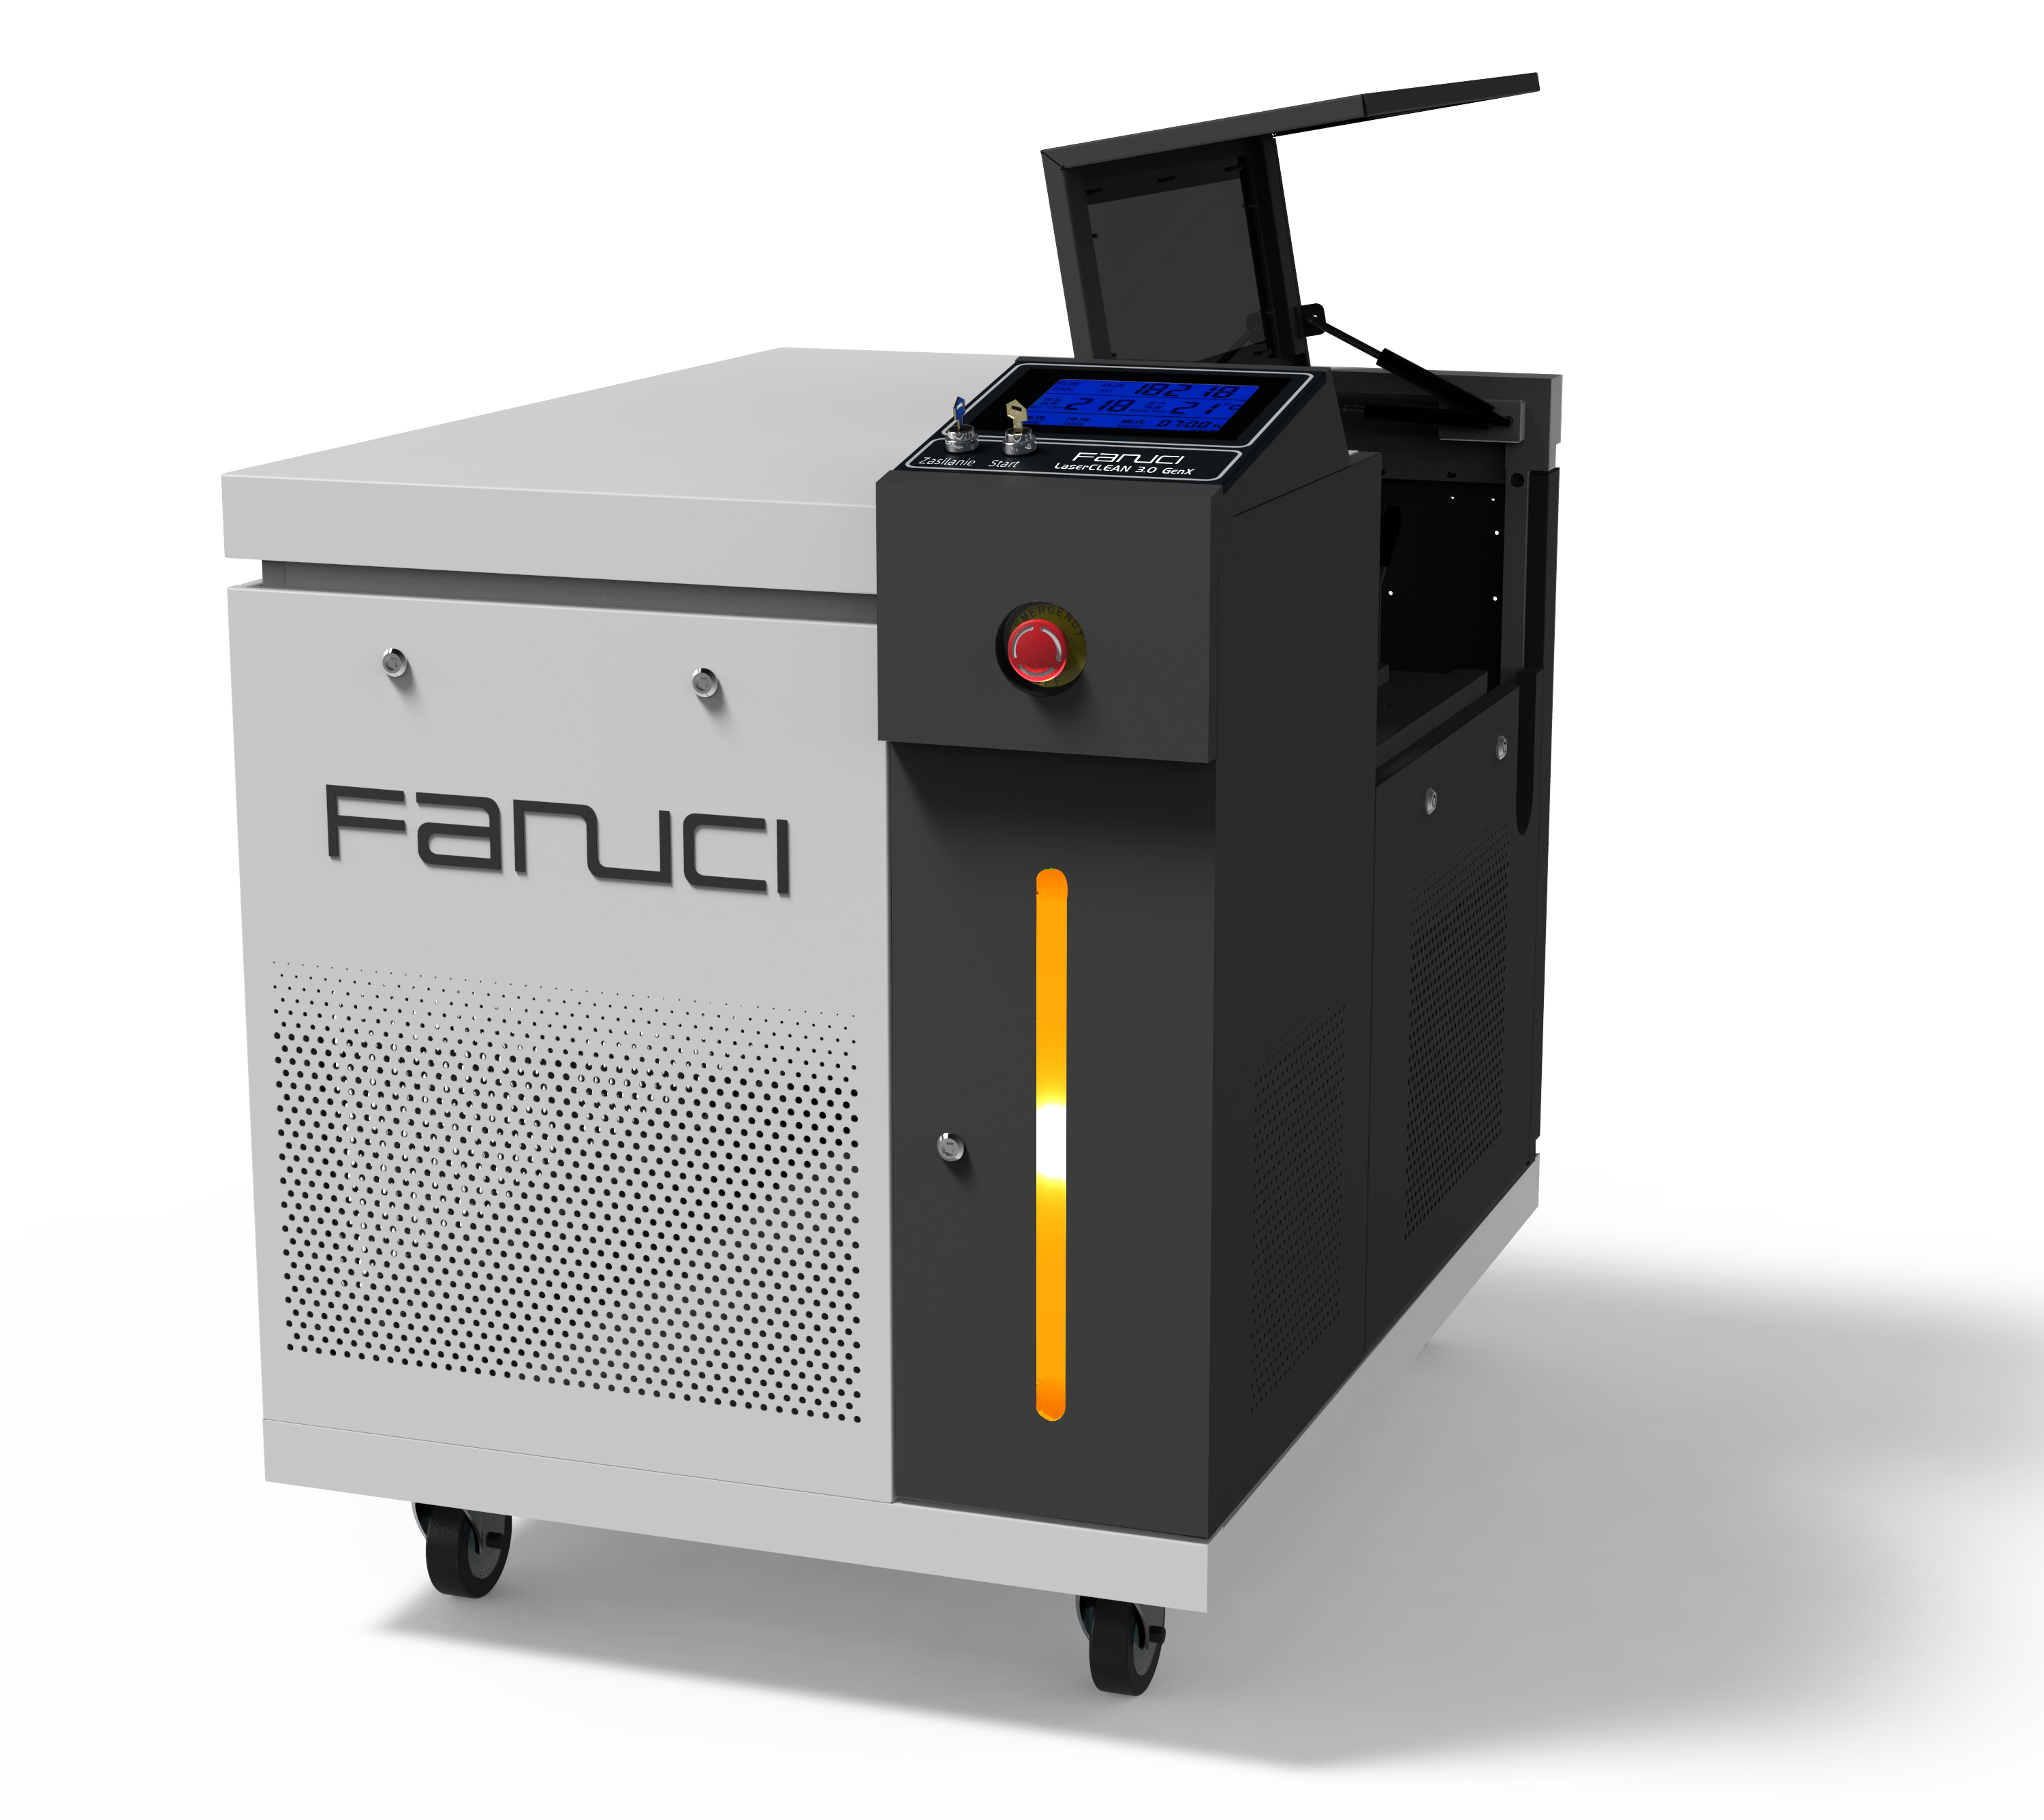 FANUCI® Pro 紧凑型激光焊接机四合一将运往欧洲